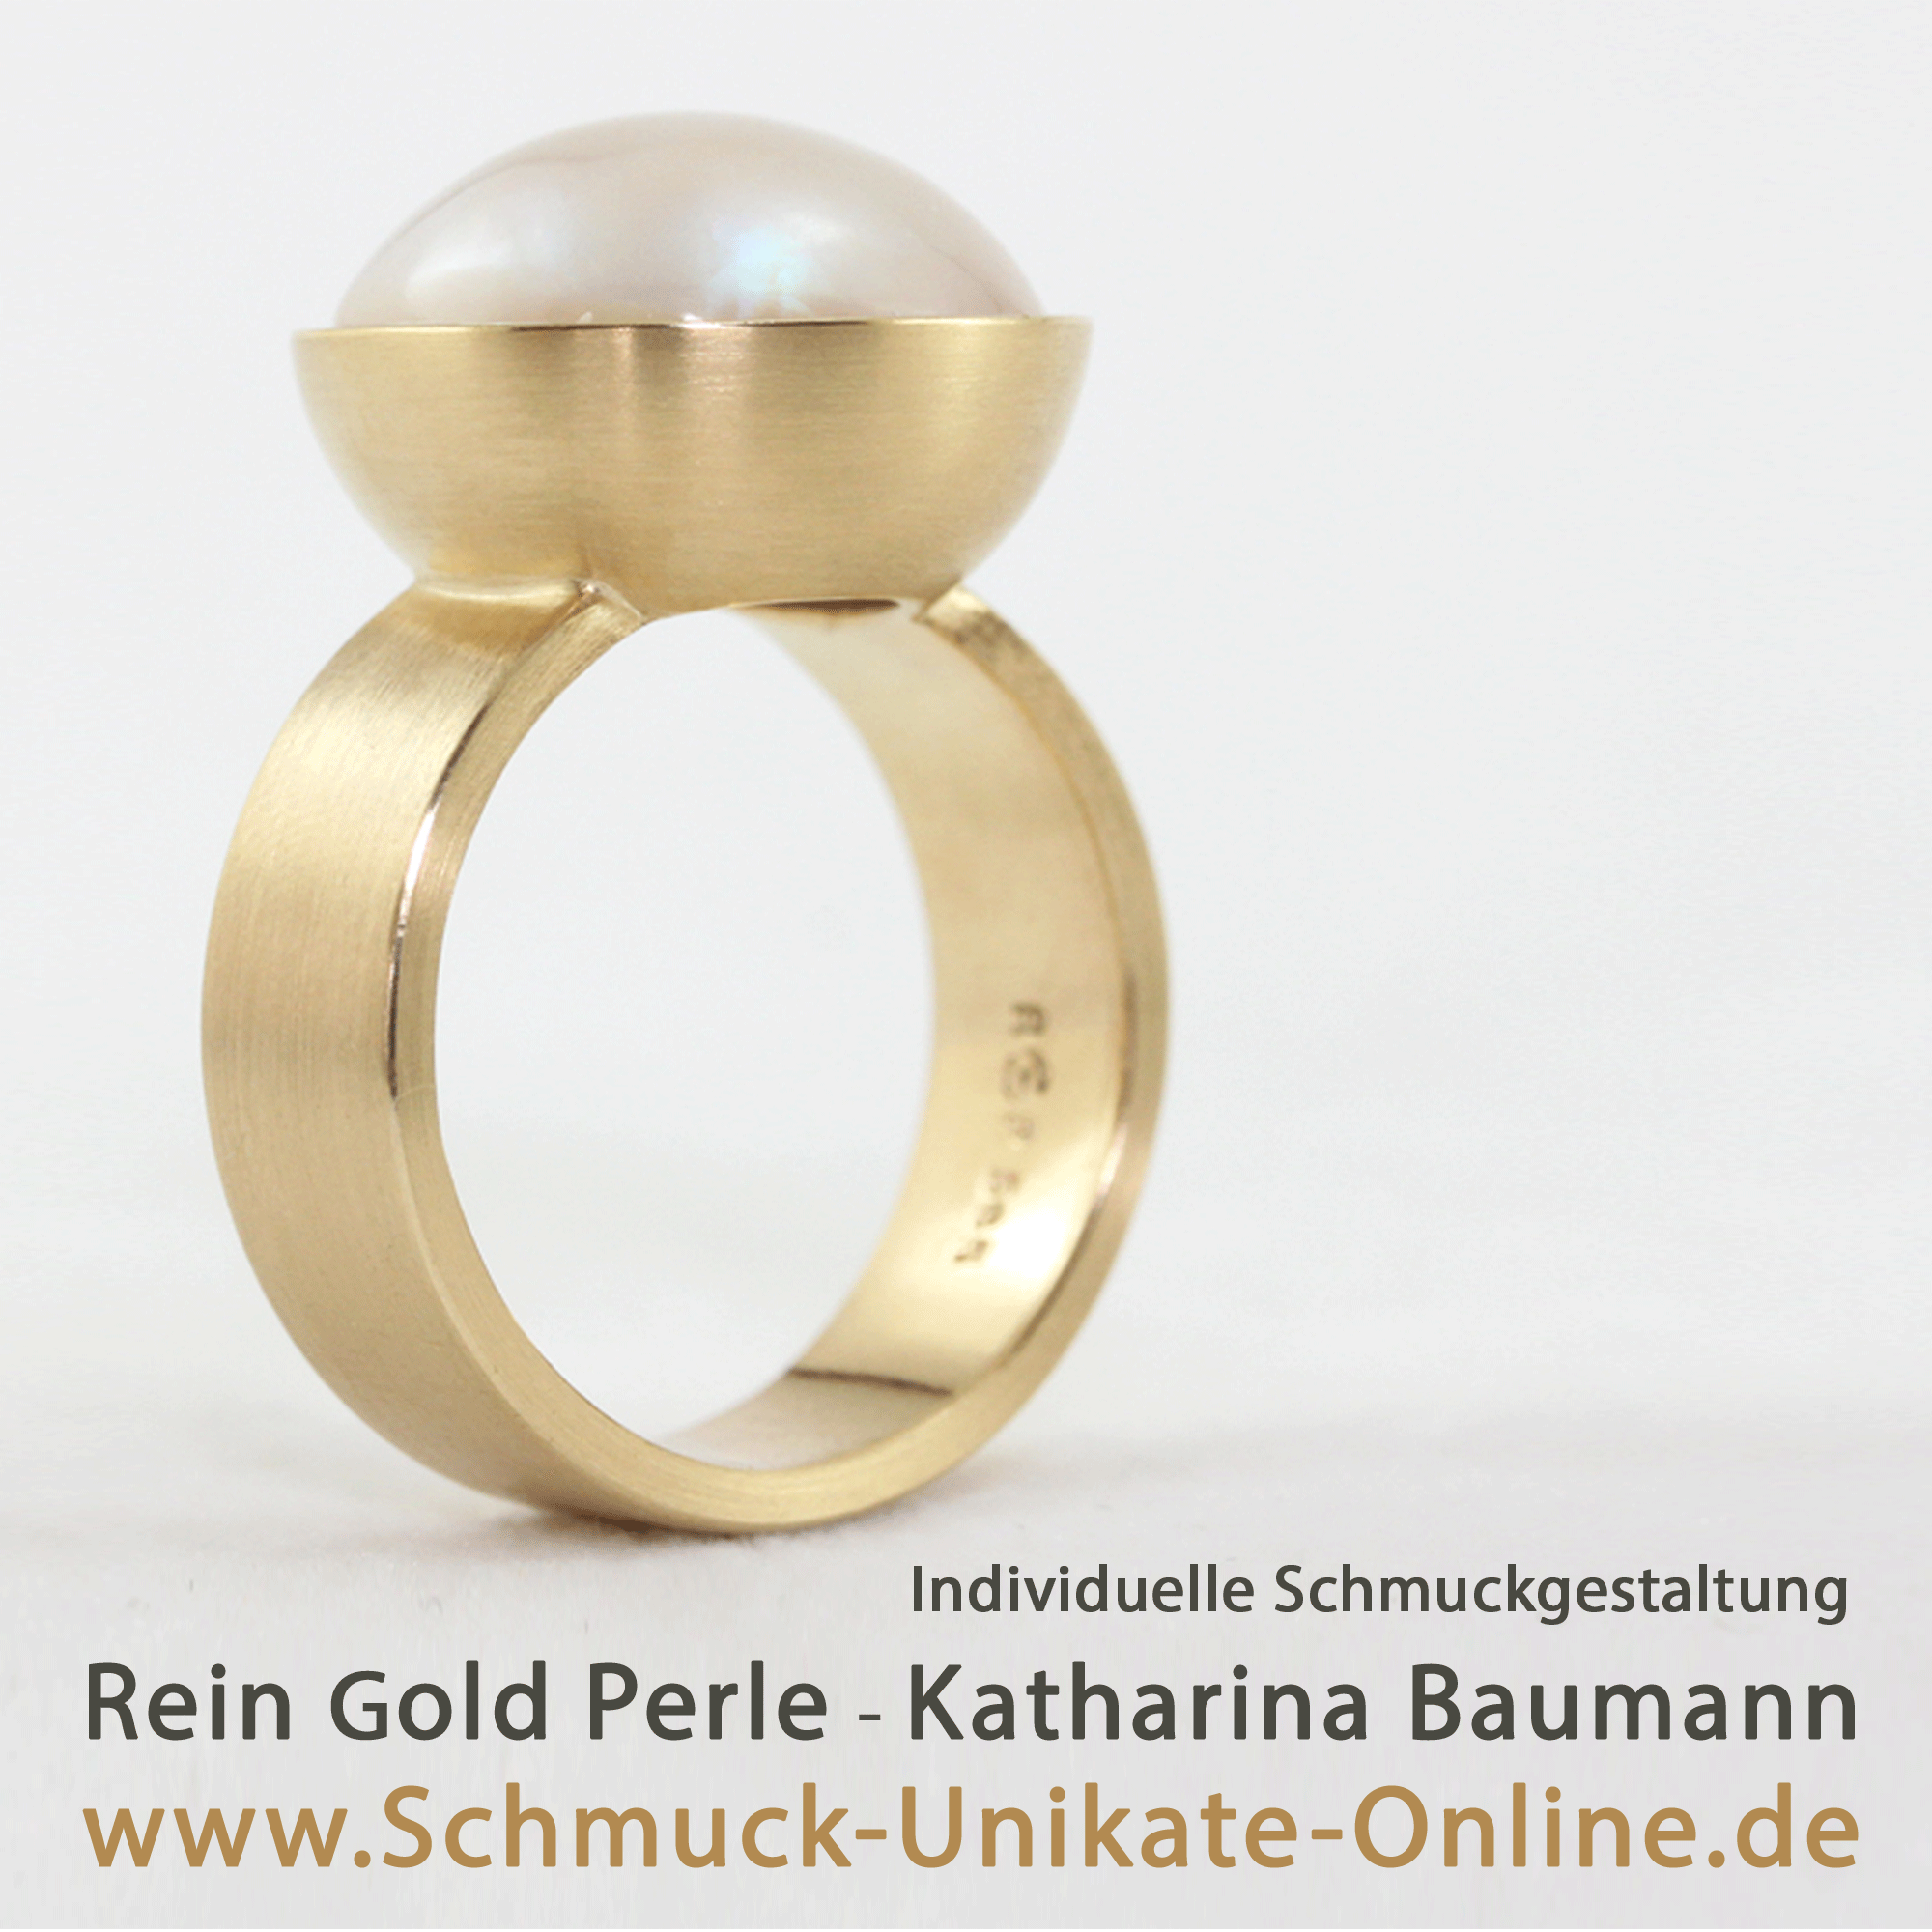 Bild 1 Rein Gold Perle - Katharina Baumann in Solingen